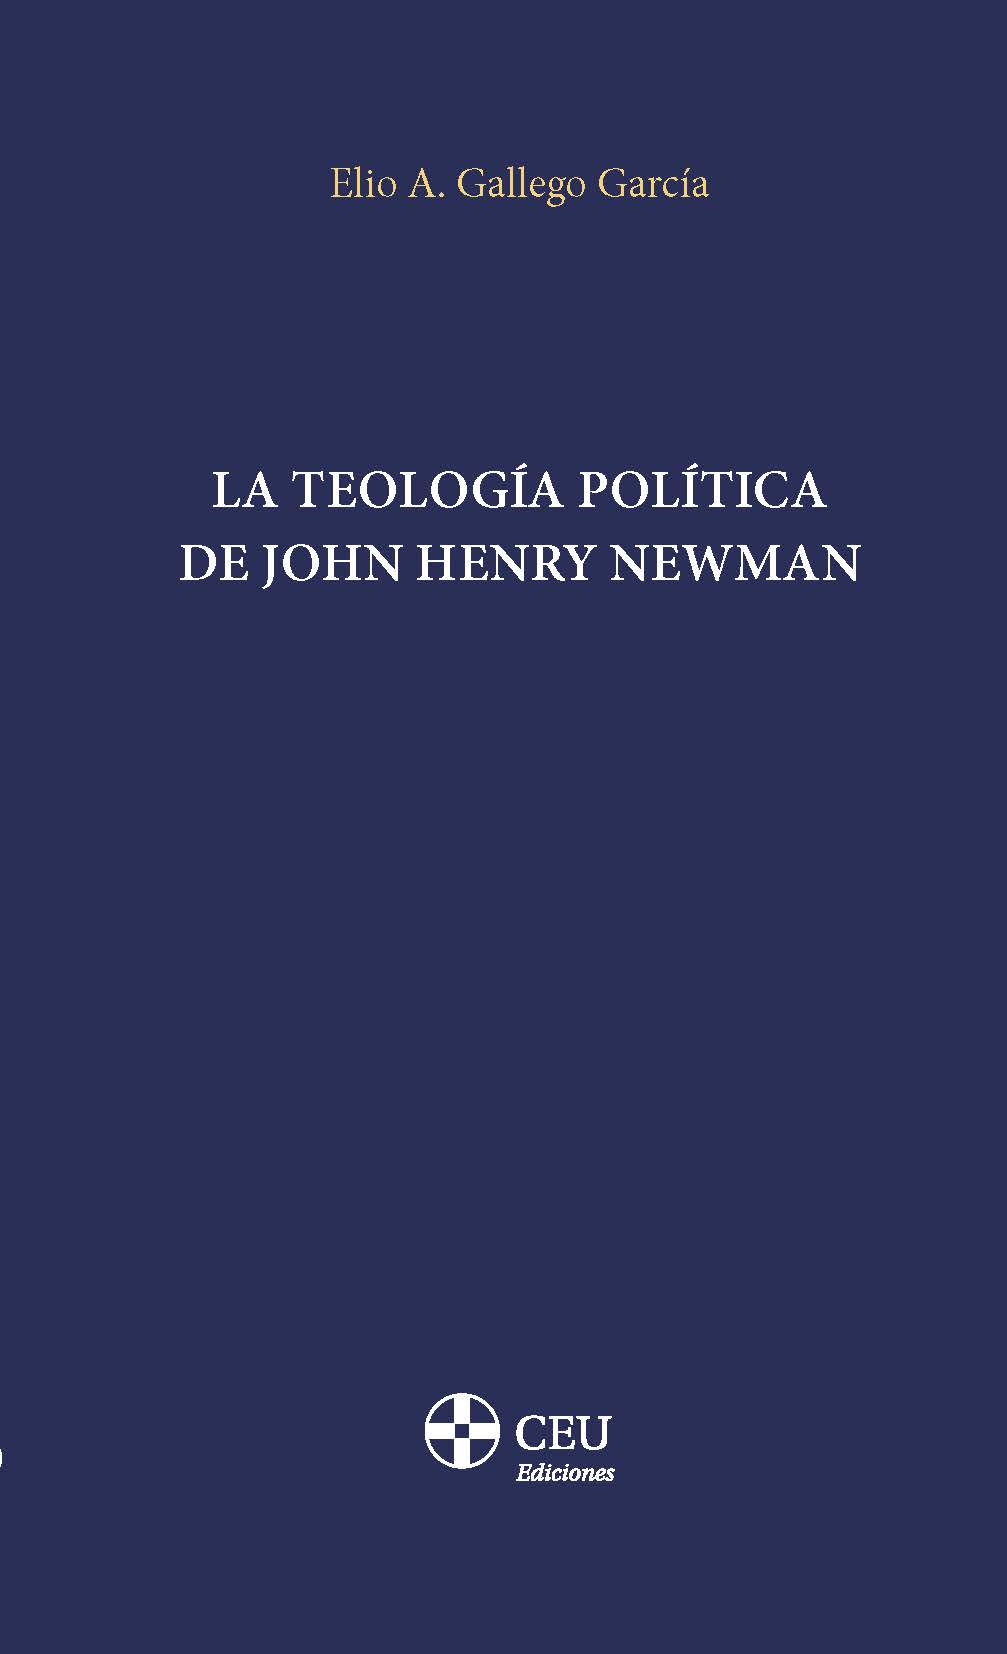 Imagen de portada del libro La teología política de John Henry Newman